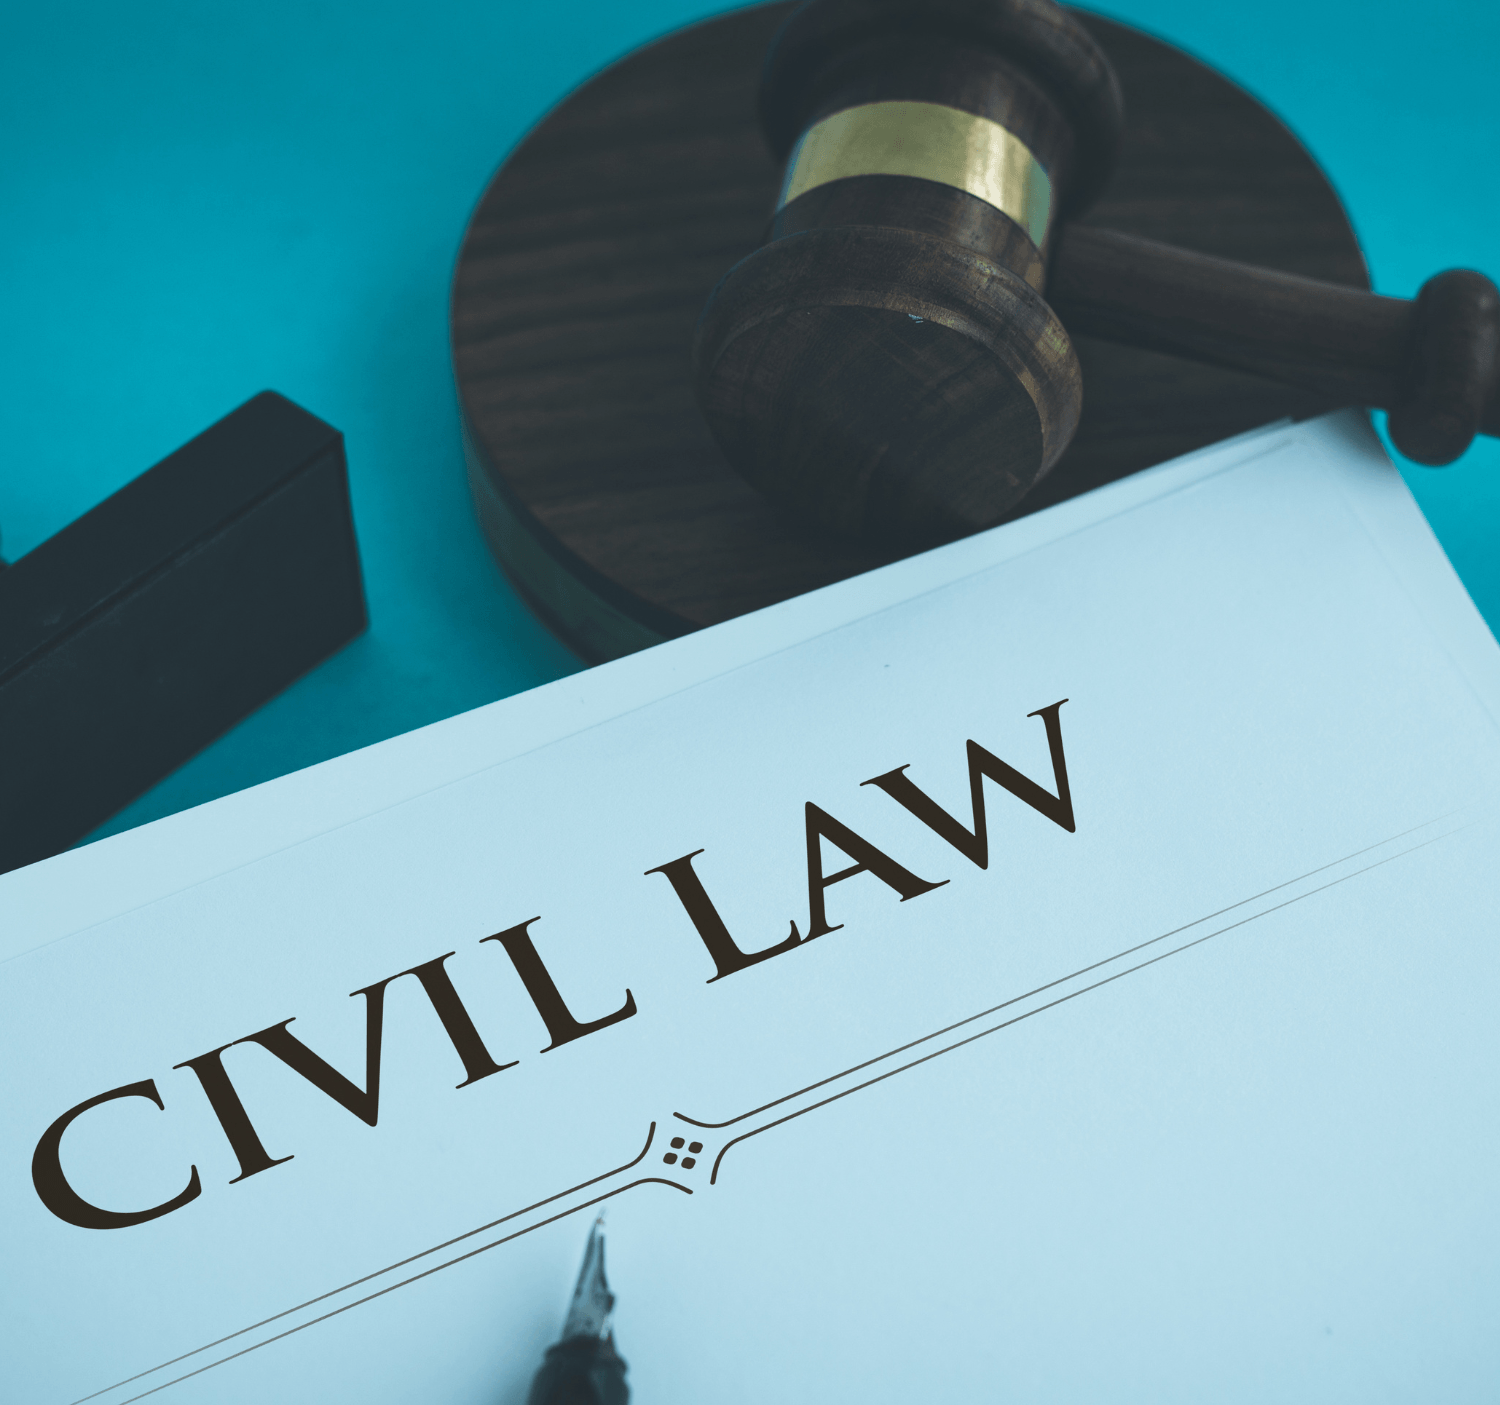 diritto civile: contrattualistica, risarcimento danni, successioni, eredità, sfratto, infortuni stradali.